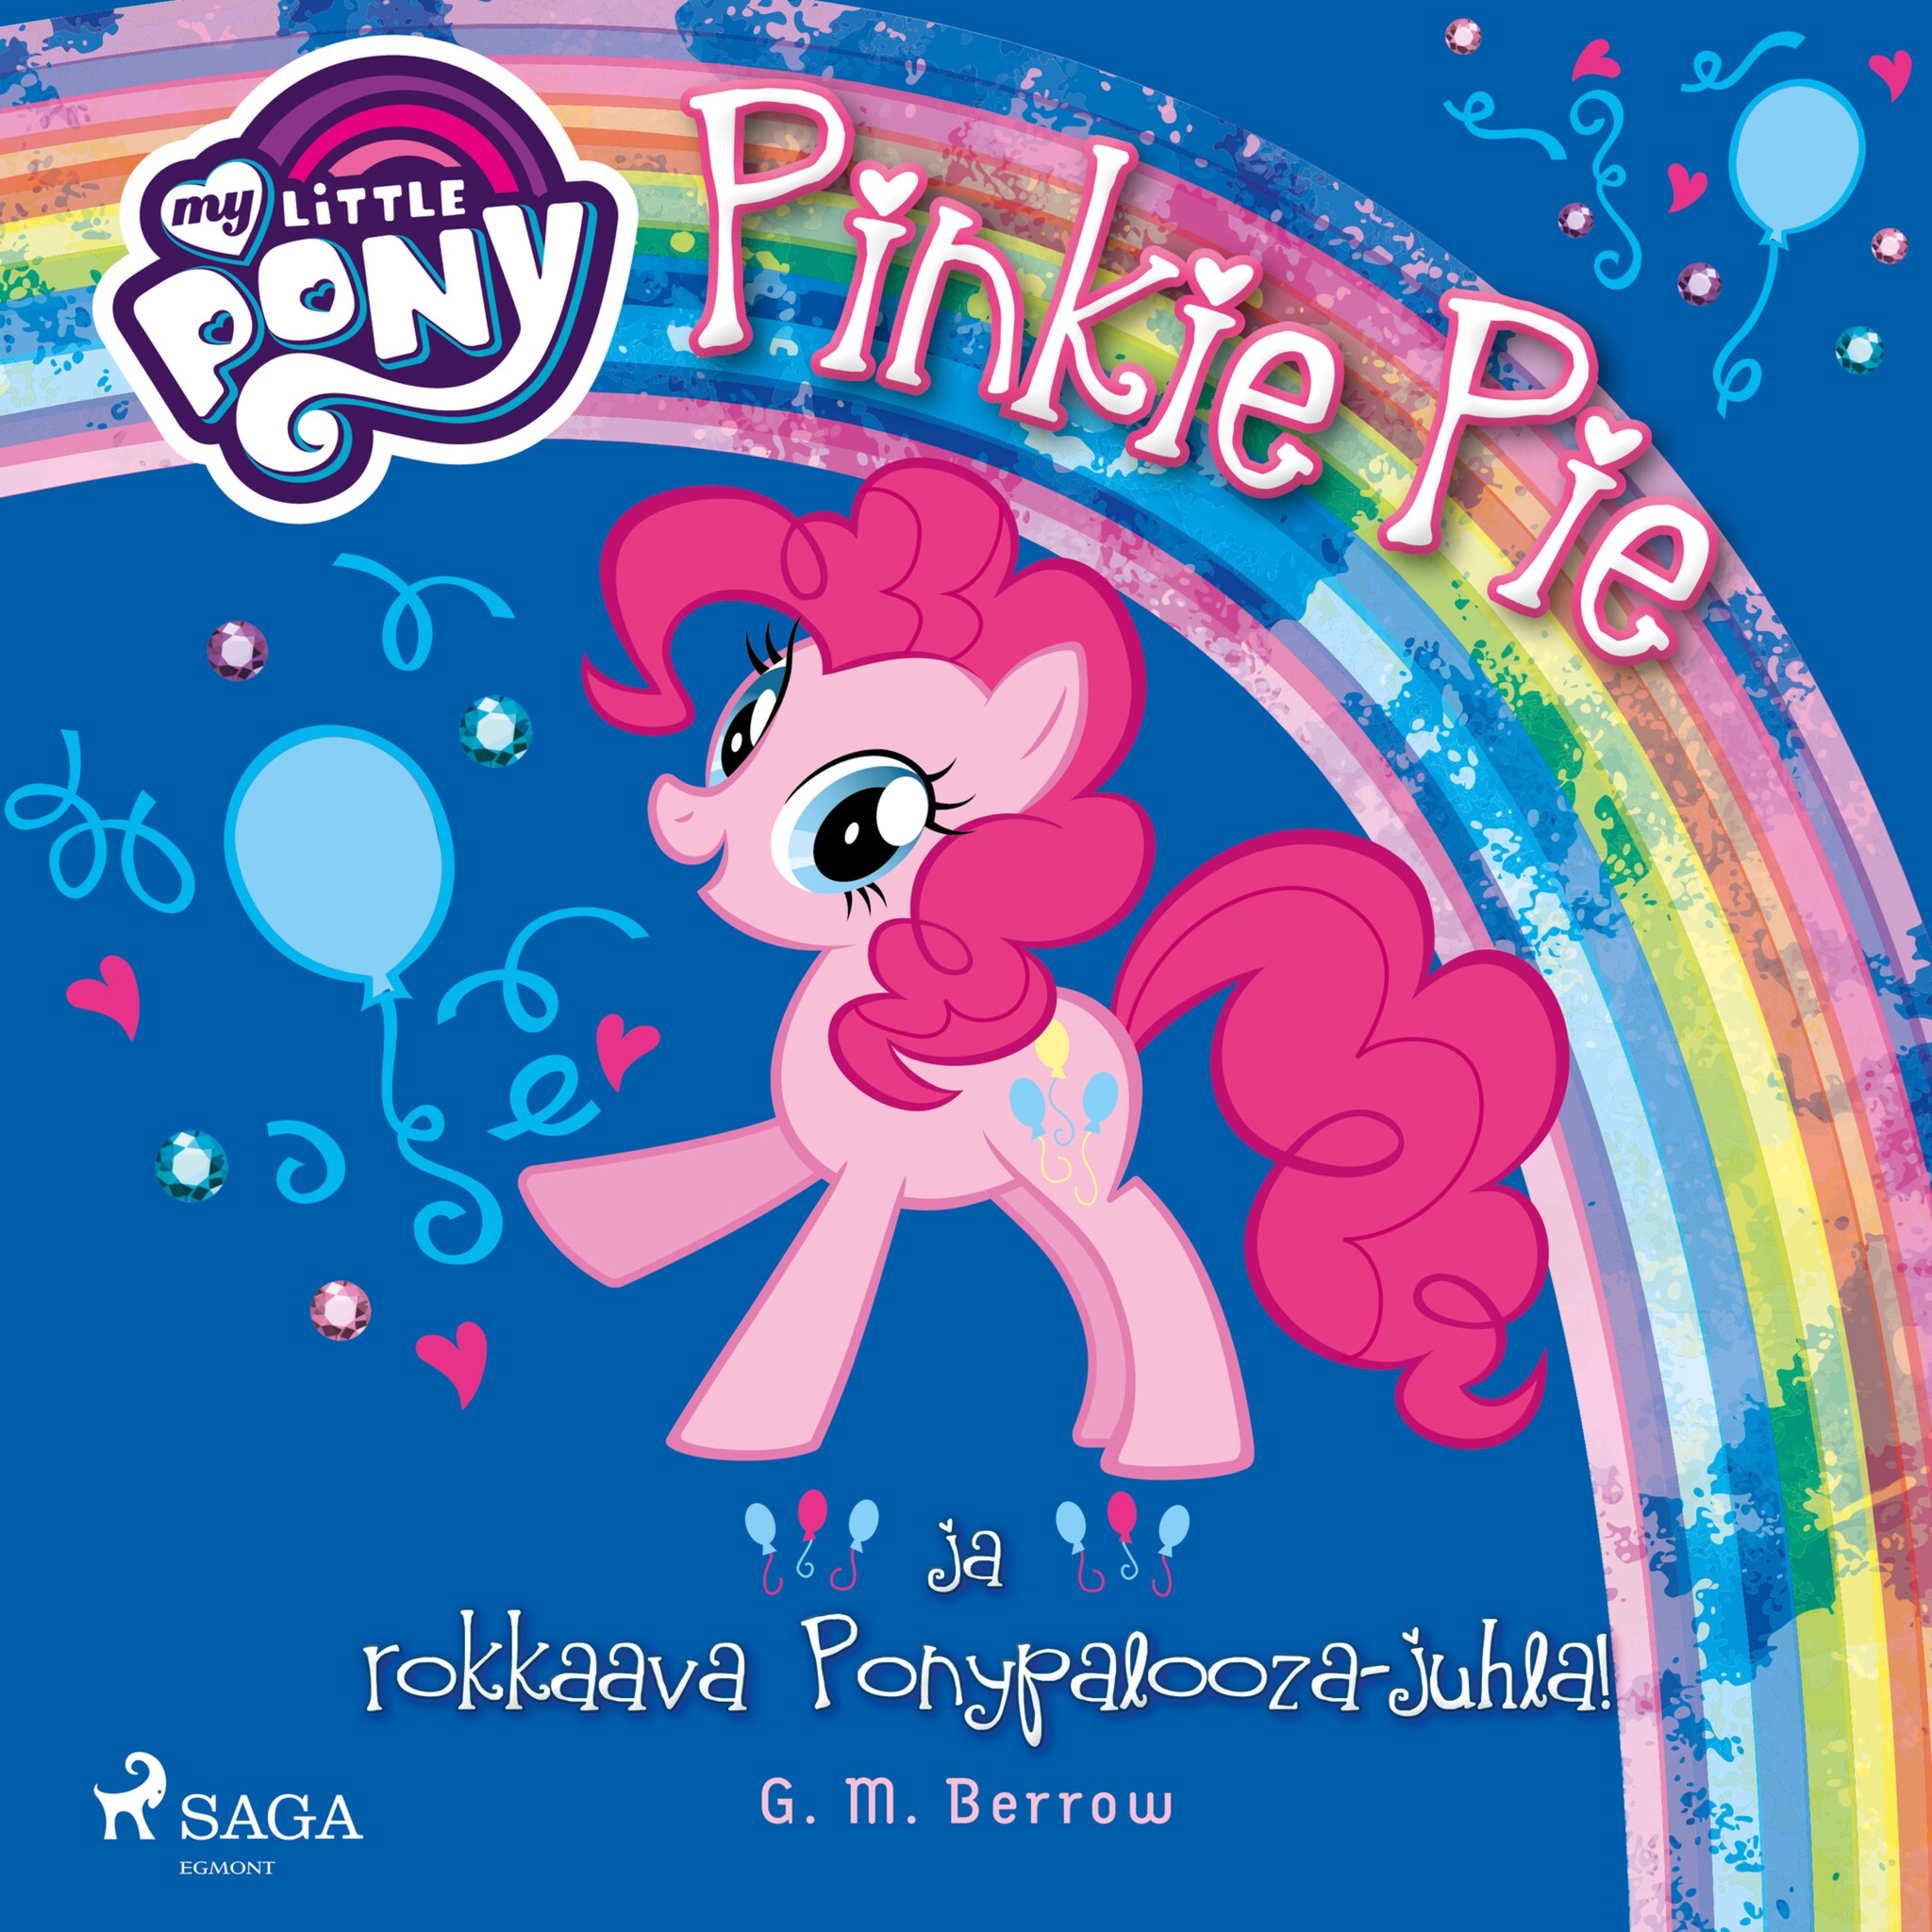 My Little Pony,Pinkie Pie ja rokkaava Ponypalooza-juhla! ilmaiseksi